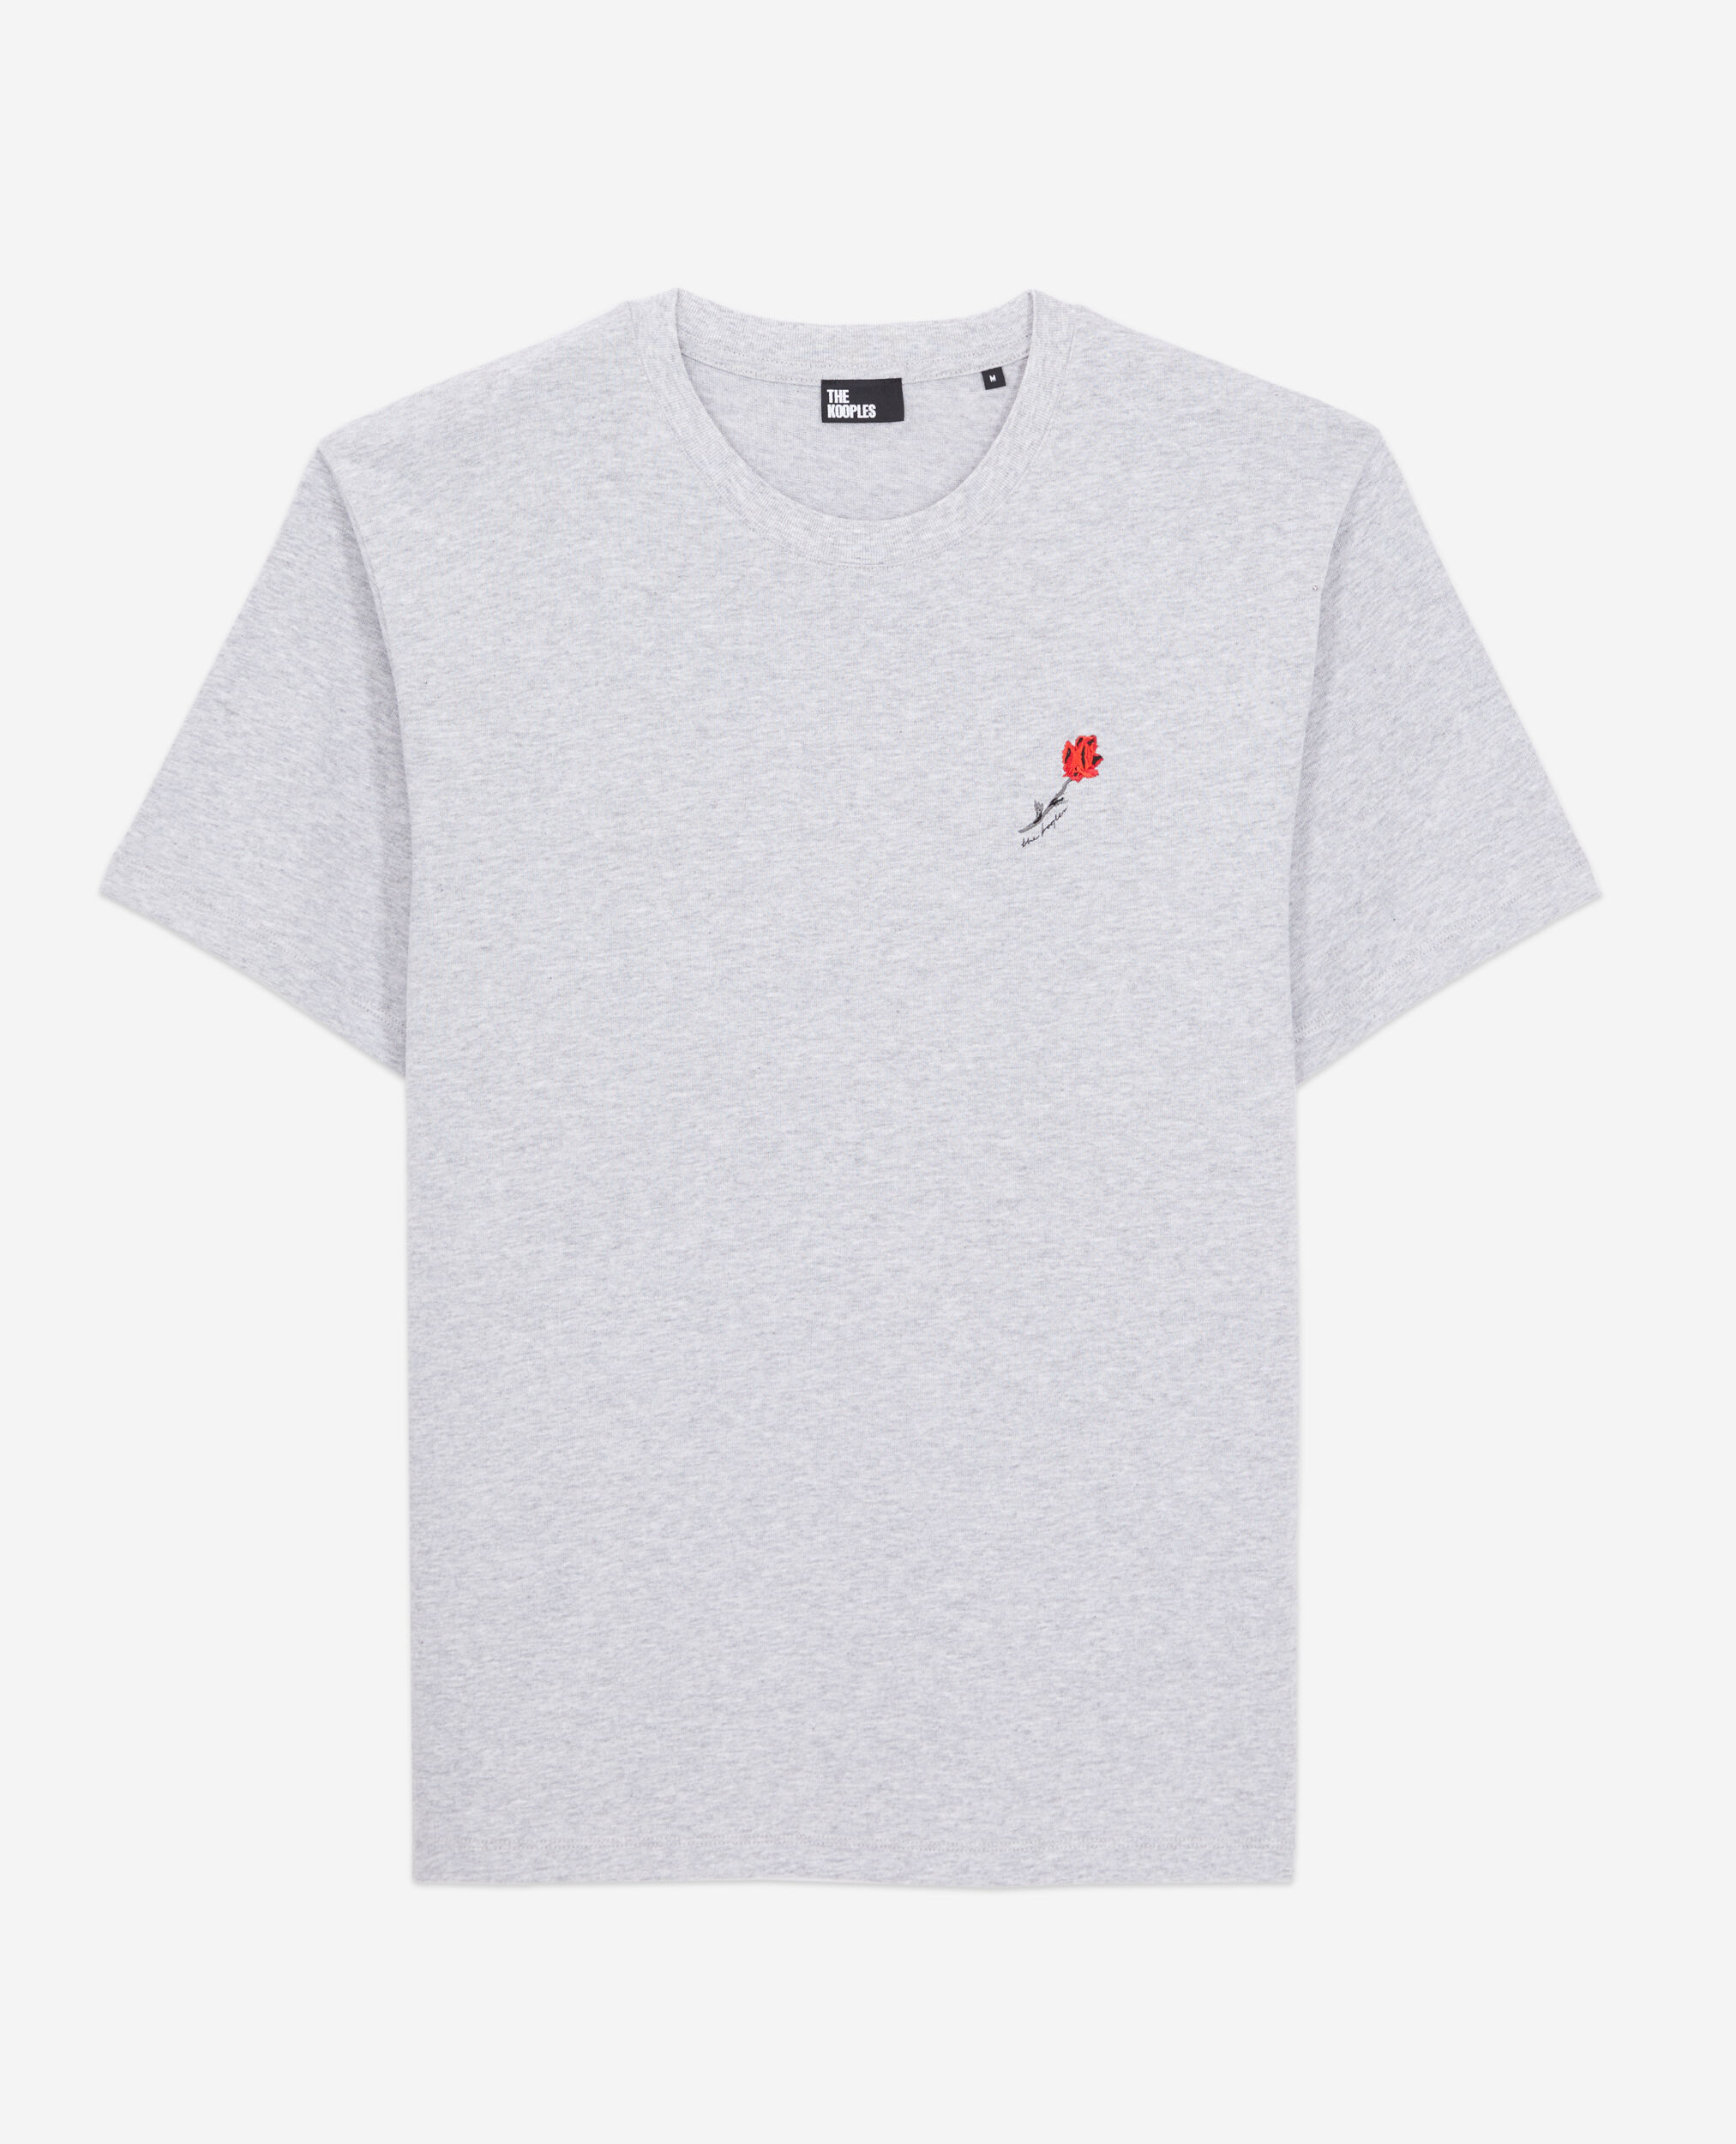 T-shirt Homme gris avec broderie fleur, GRIS CLAIR, hi-res image number null